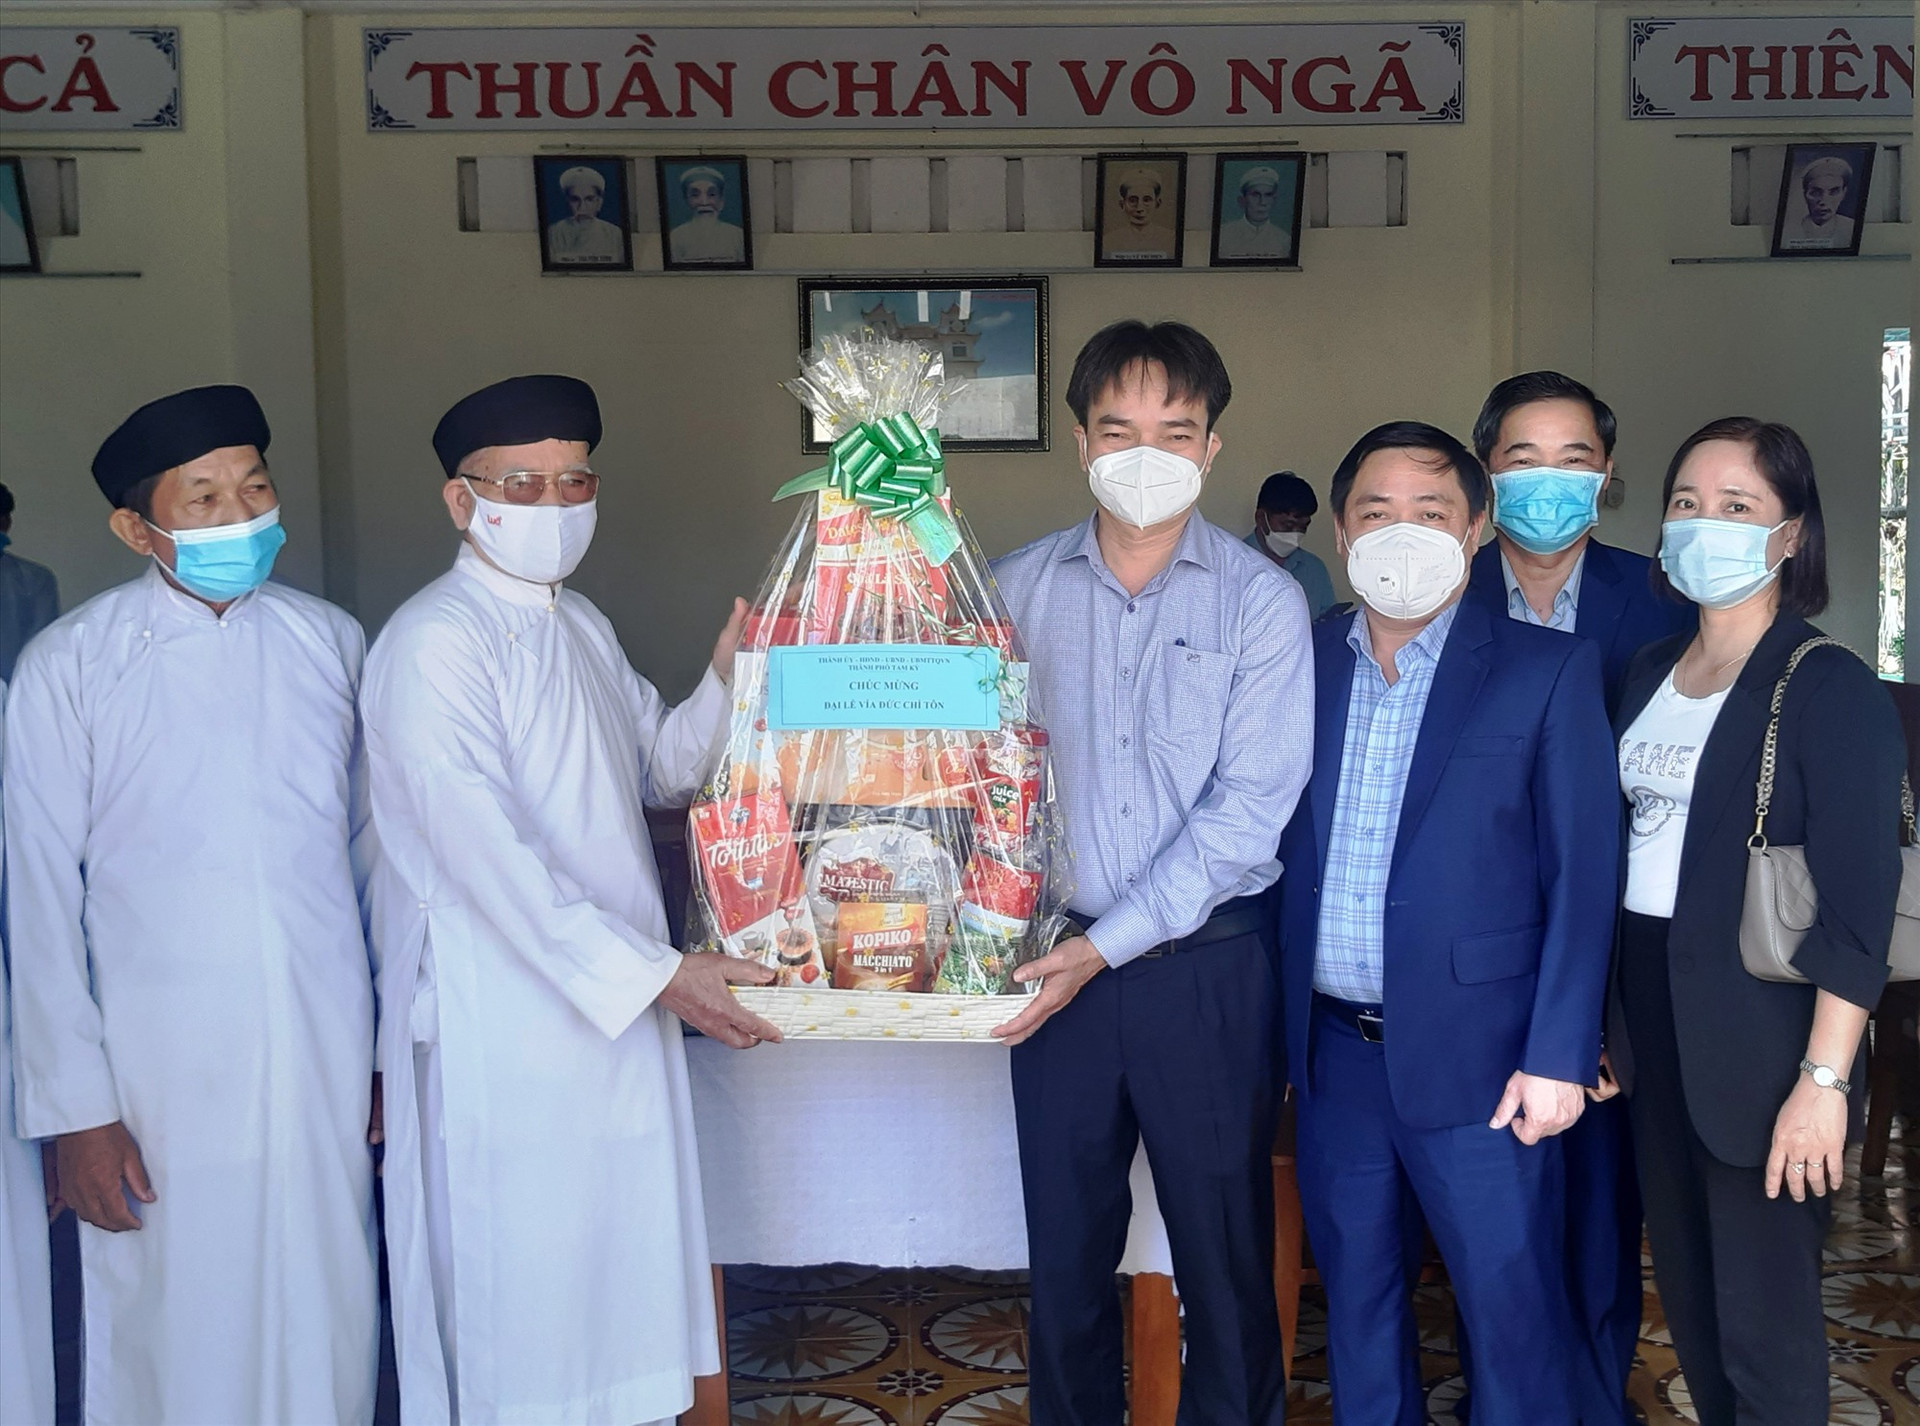 Thăm, chúc mừng Ban đại diện Hội thánh truyền giáo Cao đài tỉnh Quảng Nam